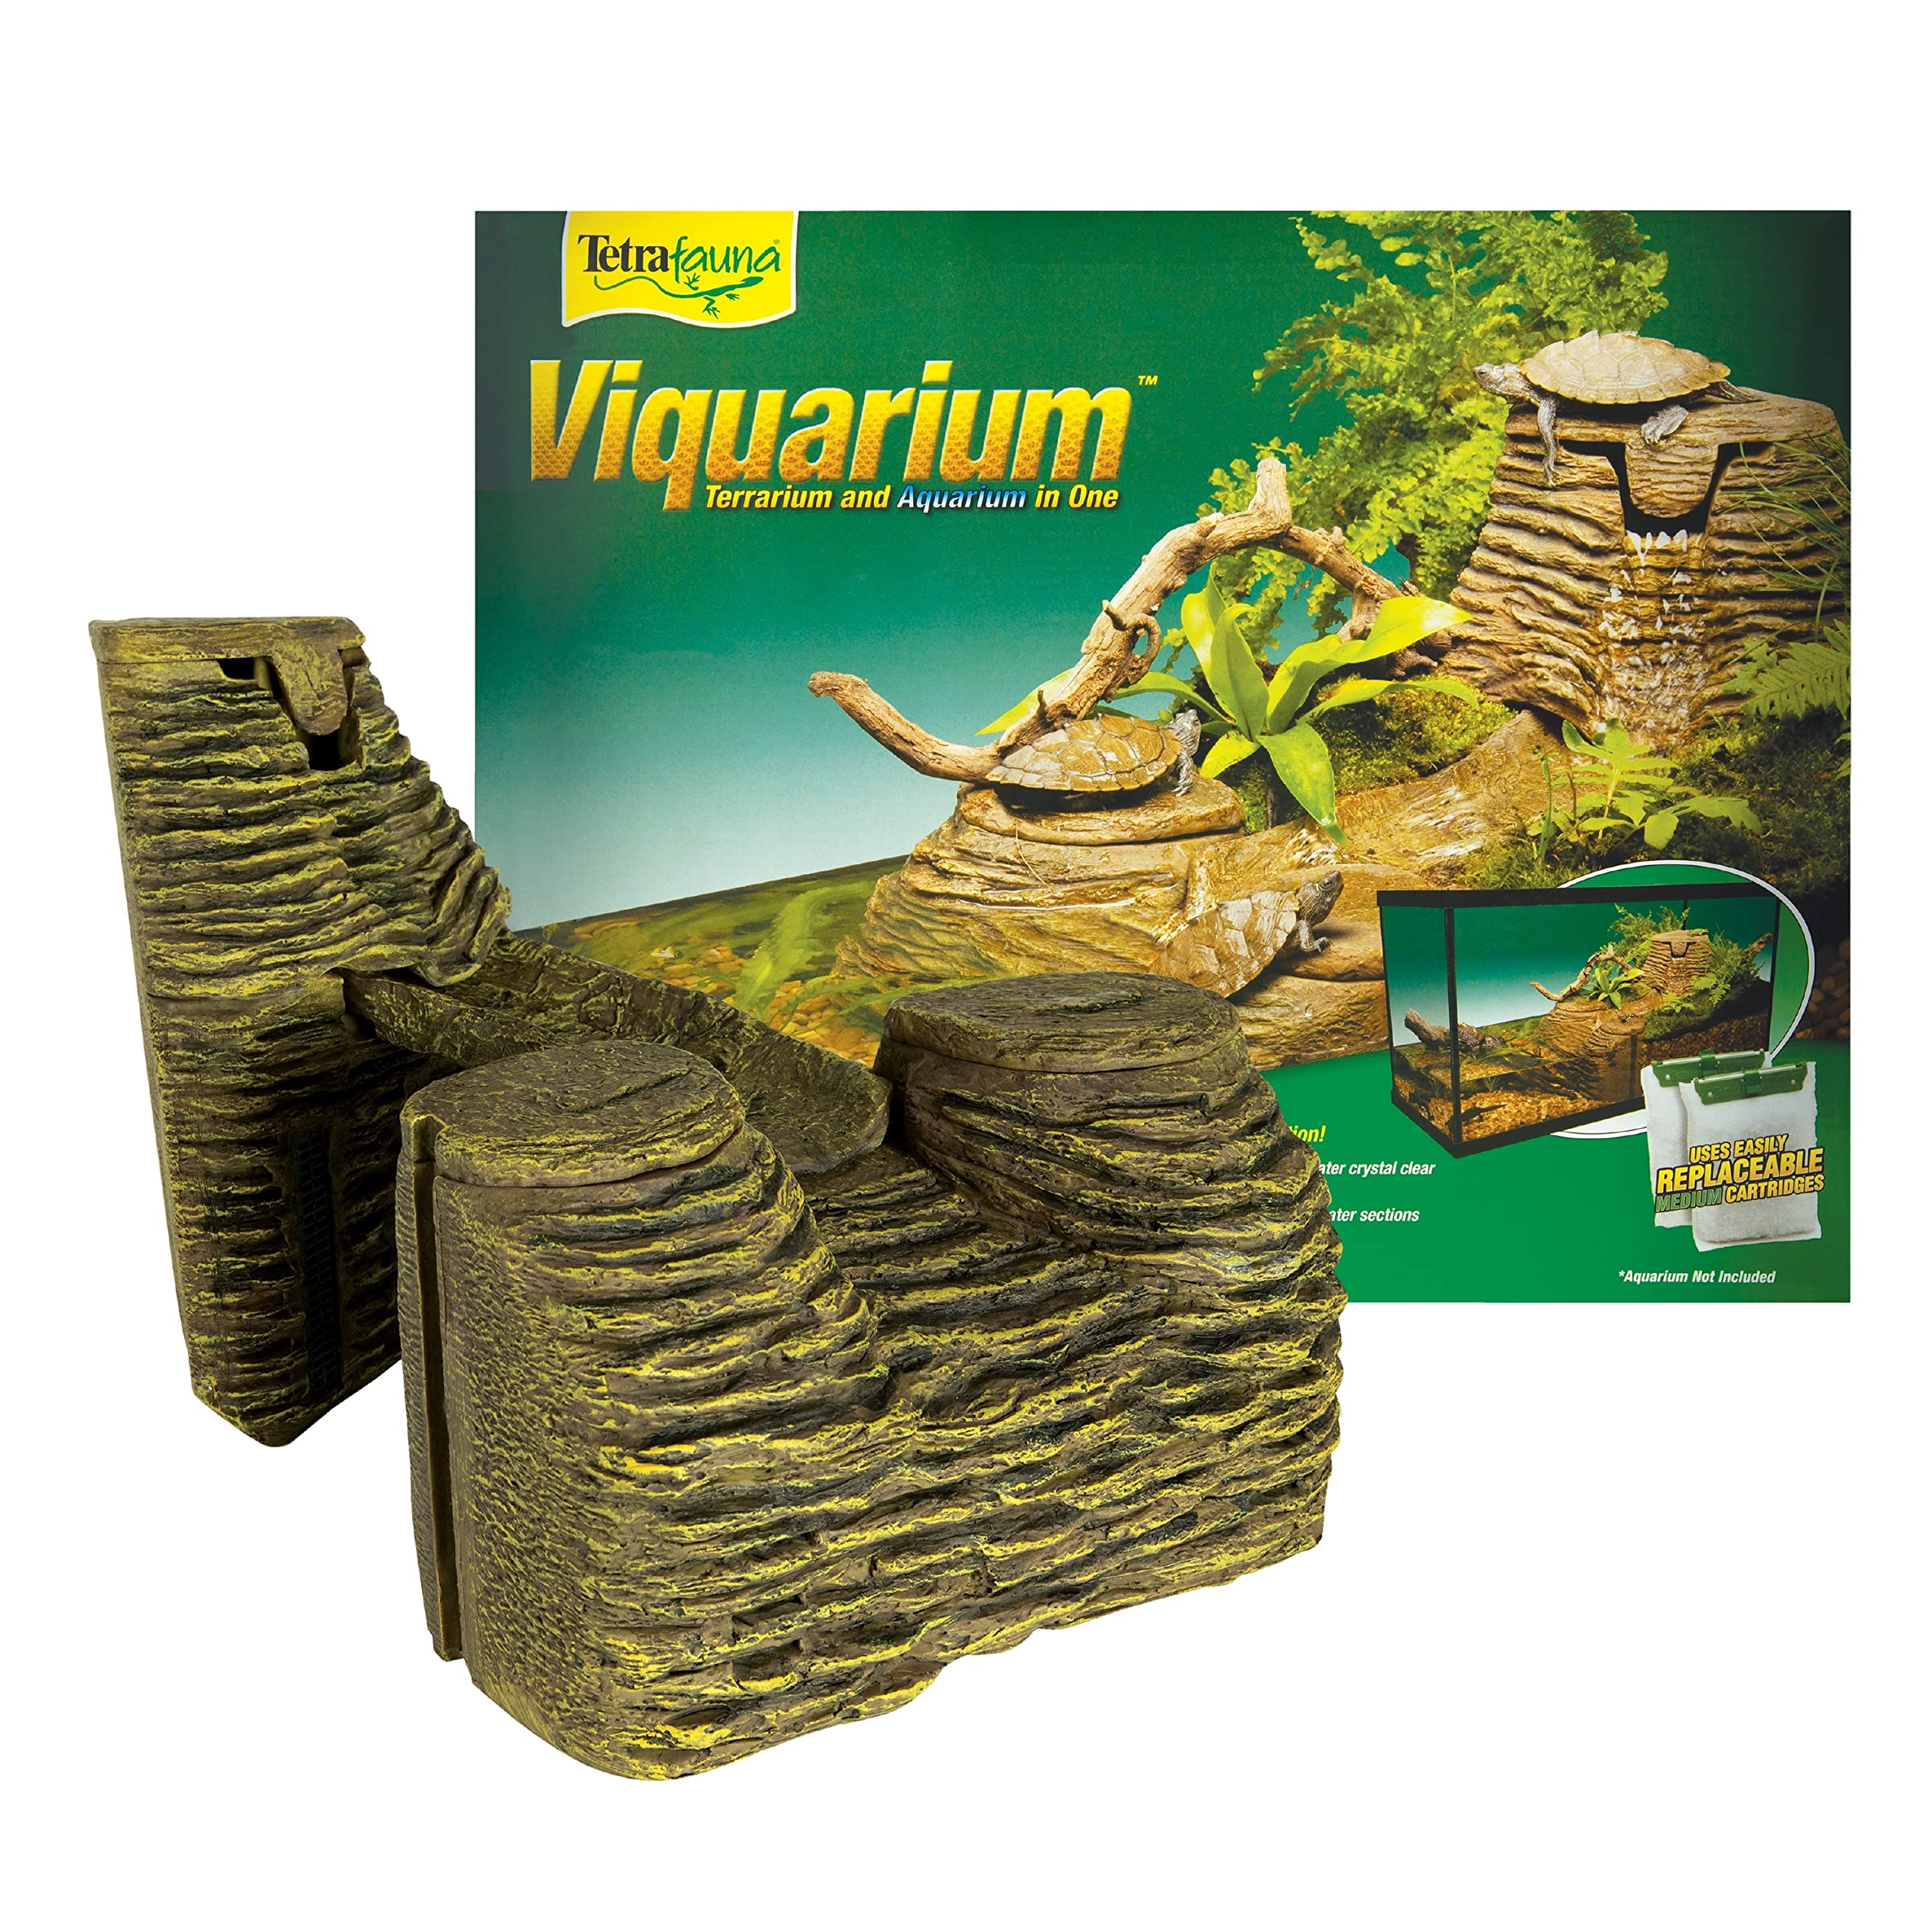 TetraFauna Viqaquarium, All-In-One Terrarium And aquarium, Ideal For Aquatic Reptiles And Amphibians